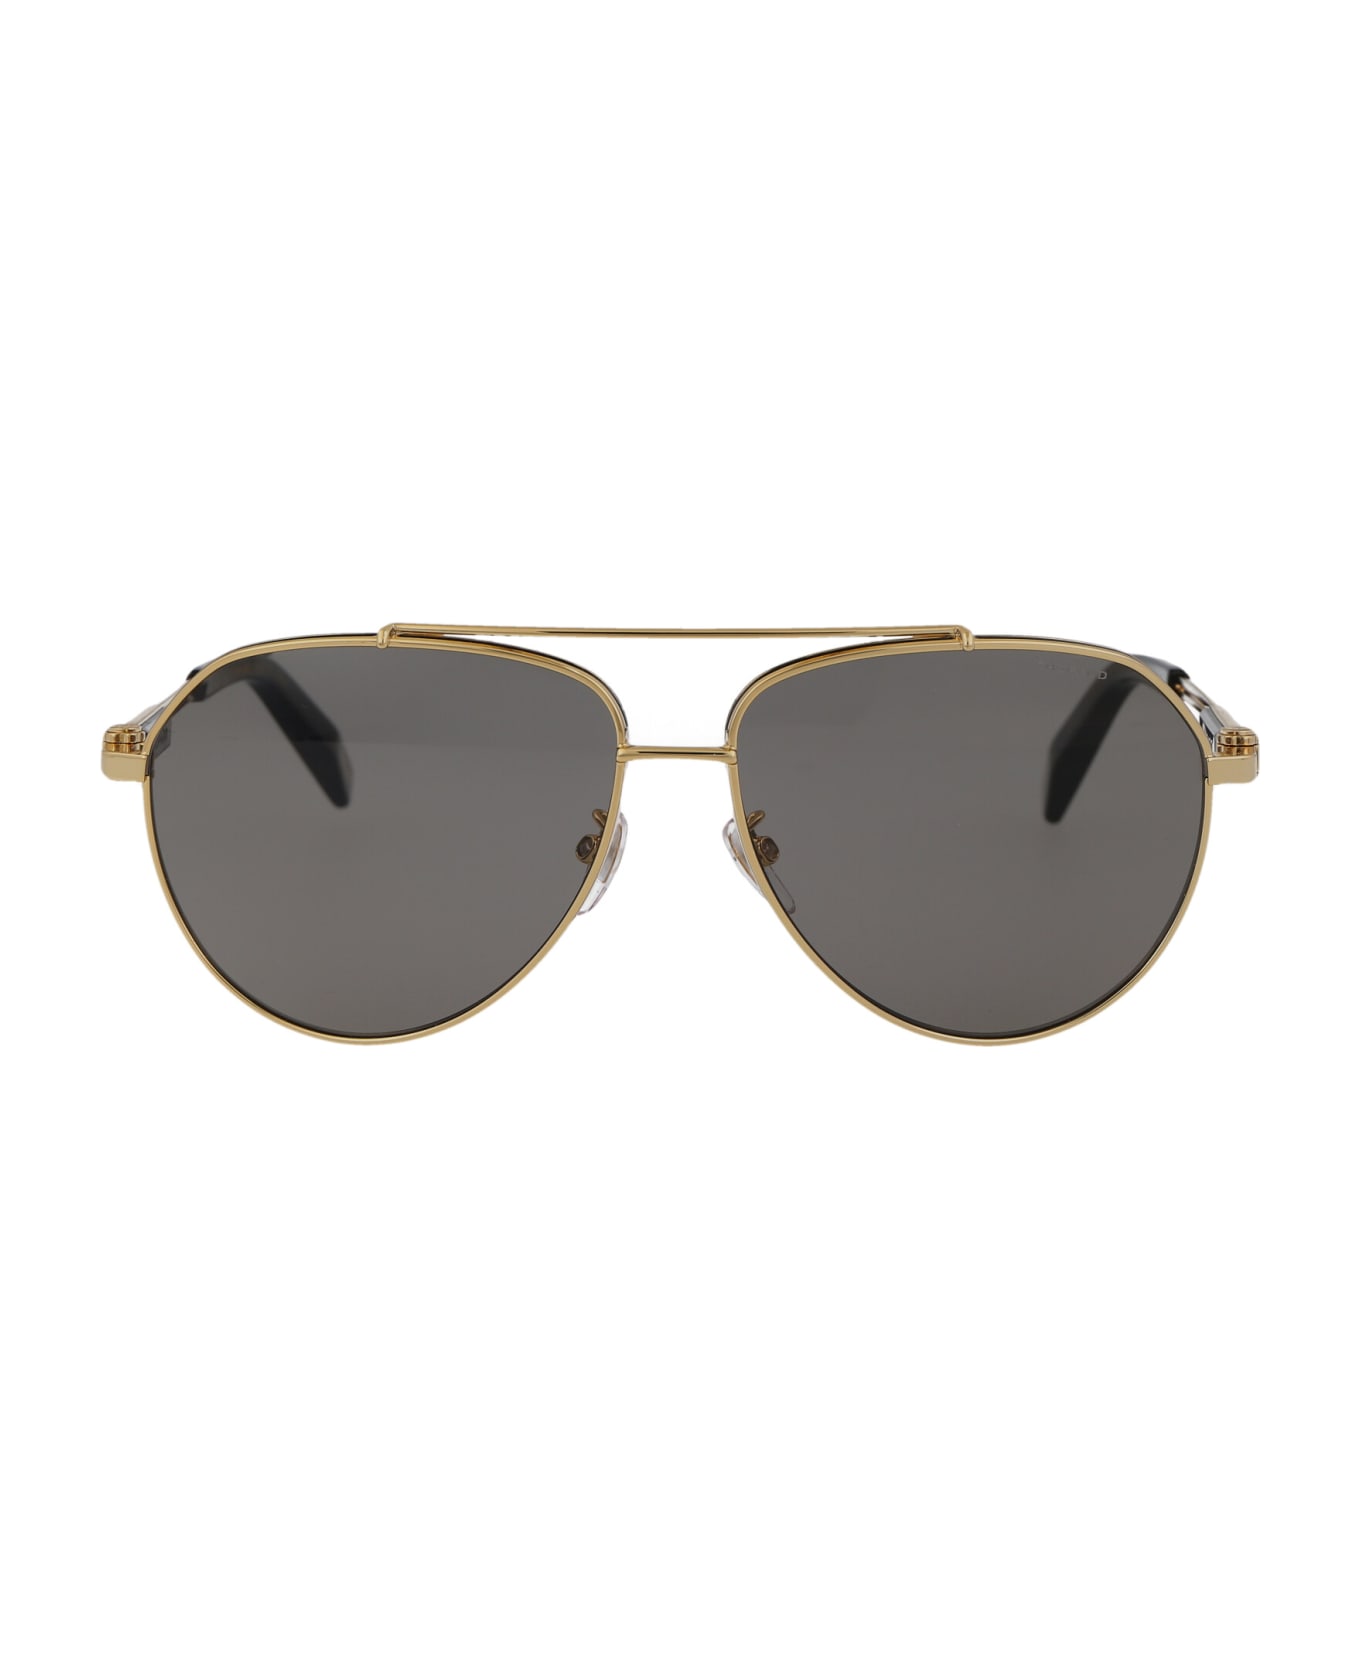 Chopard Schg63 Sunglasses - 400P GOLD